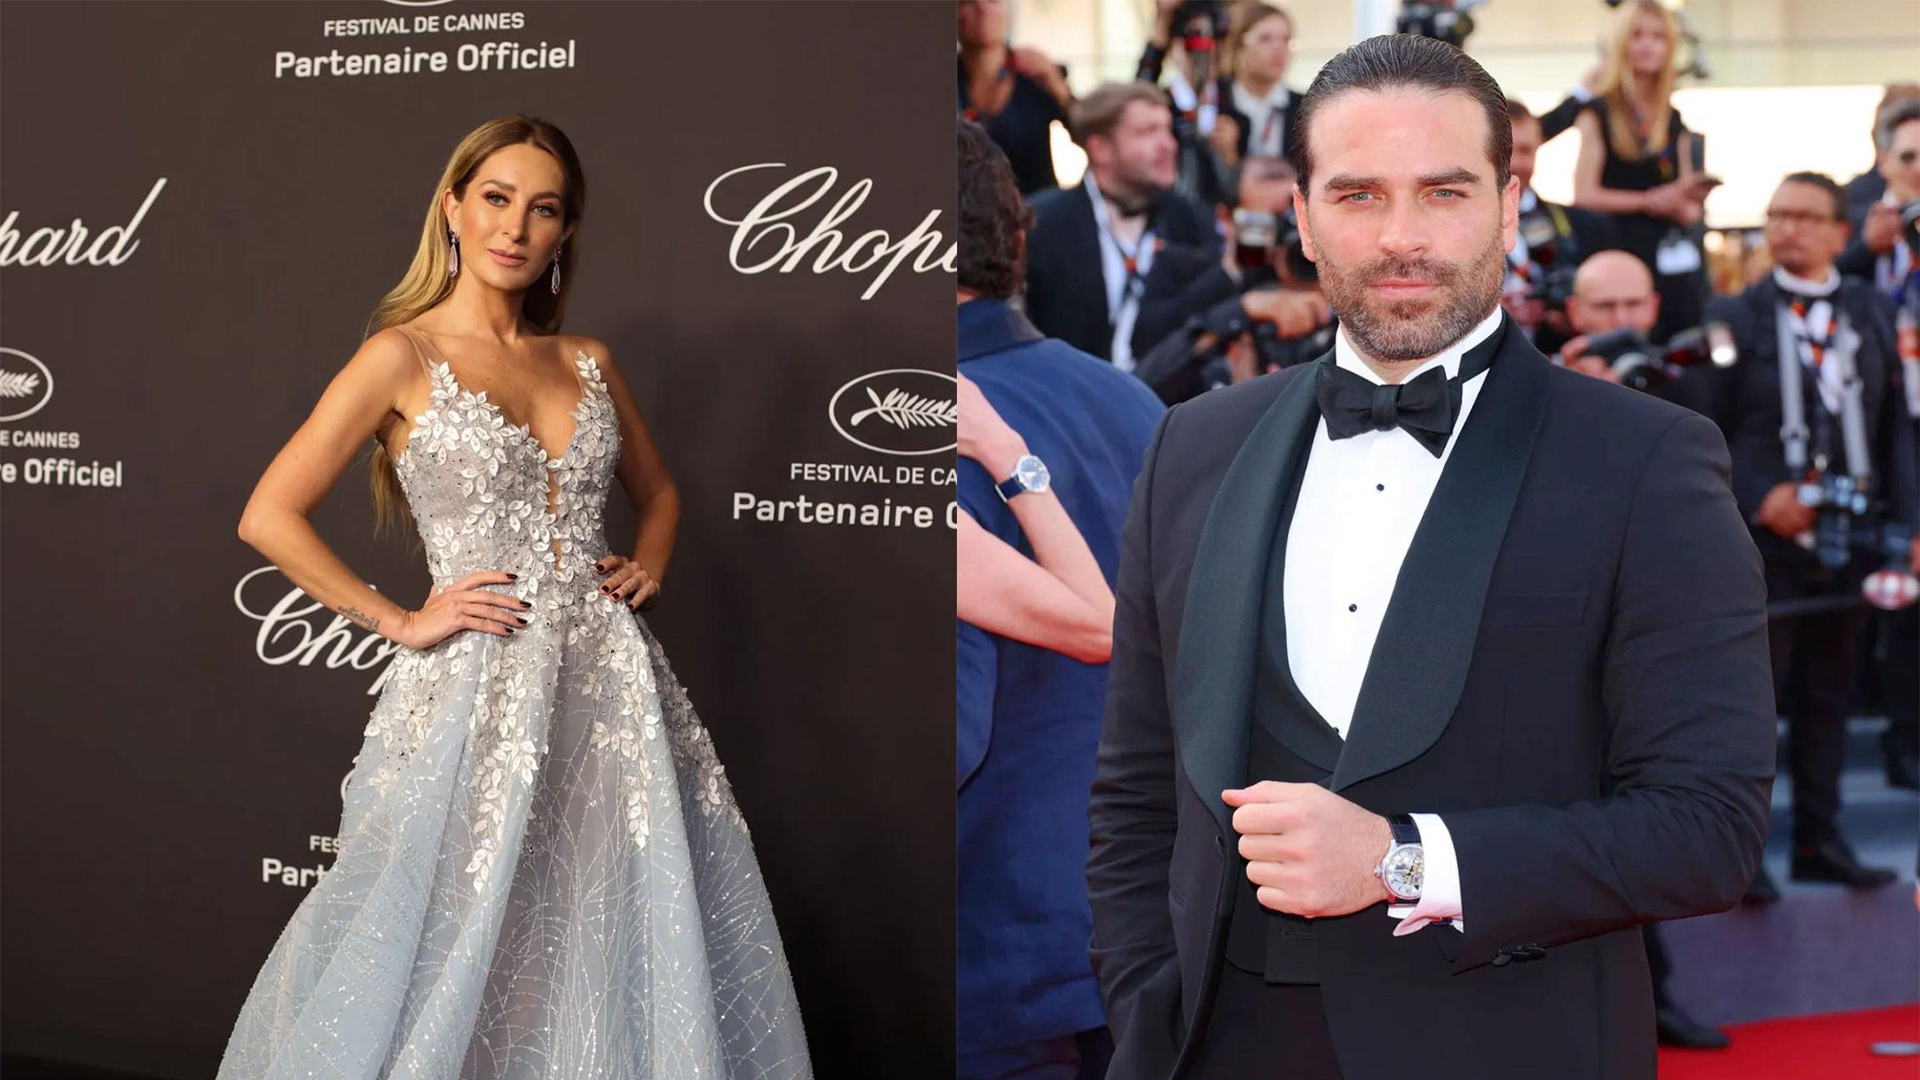 Geraldine Bazan y Alejandro Nones acudieron al Festival Cannes 2022 desatando más rumores de romance 